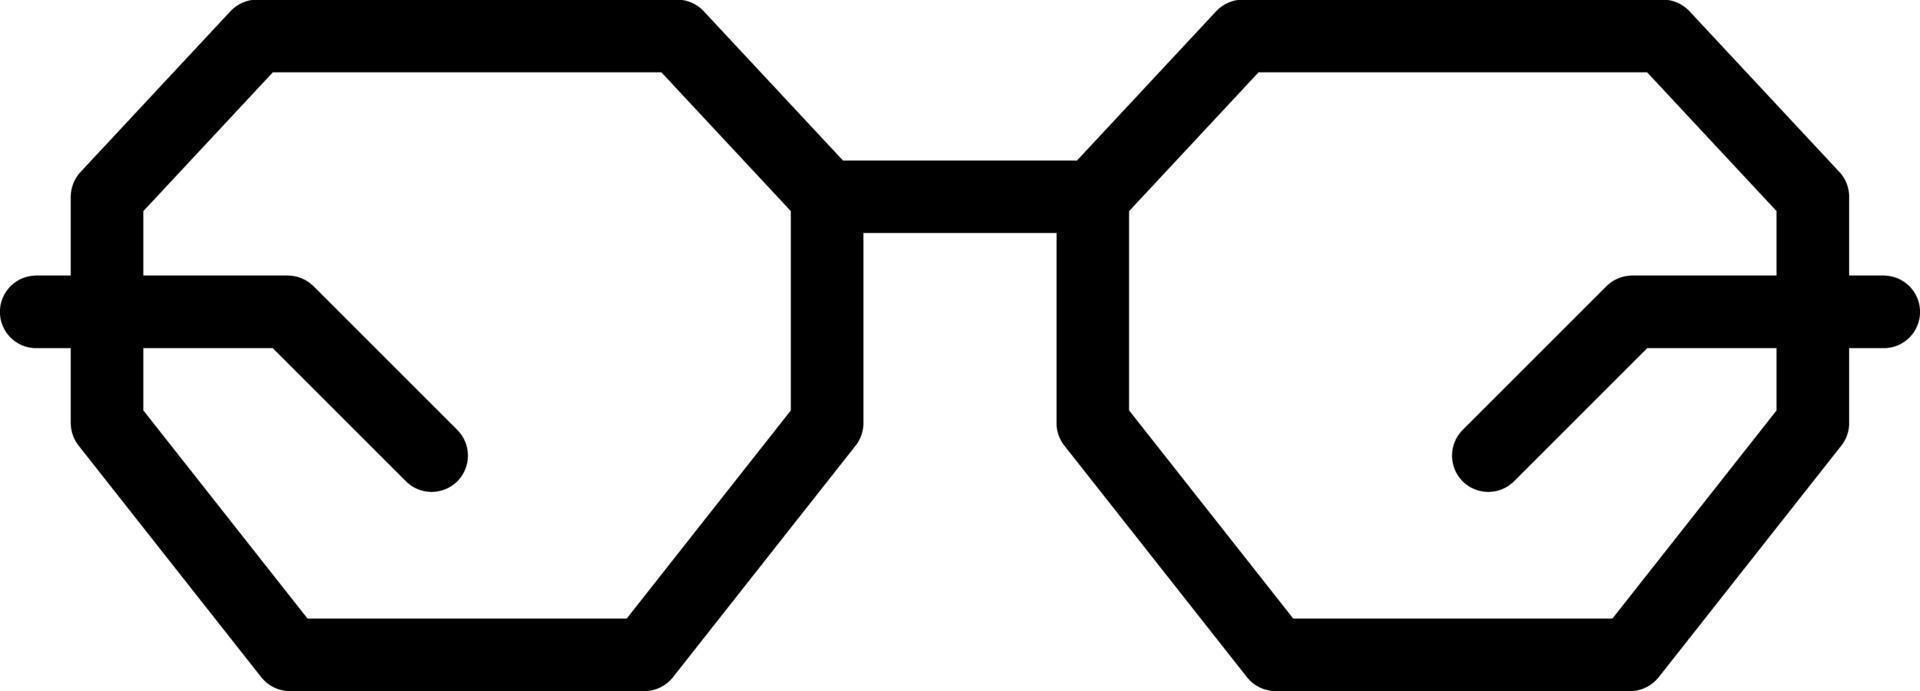 occhiali vettore icona design